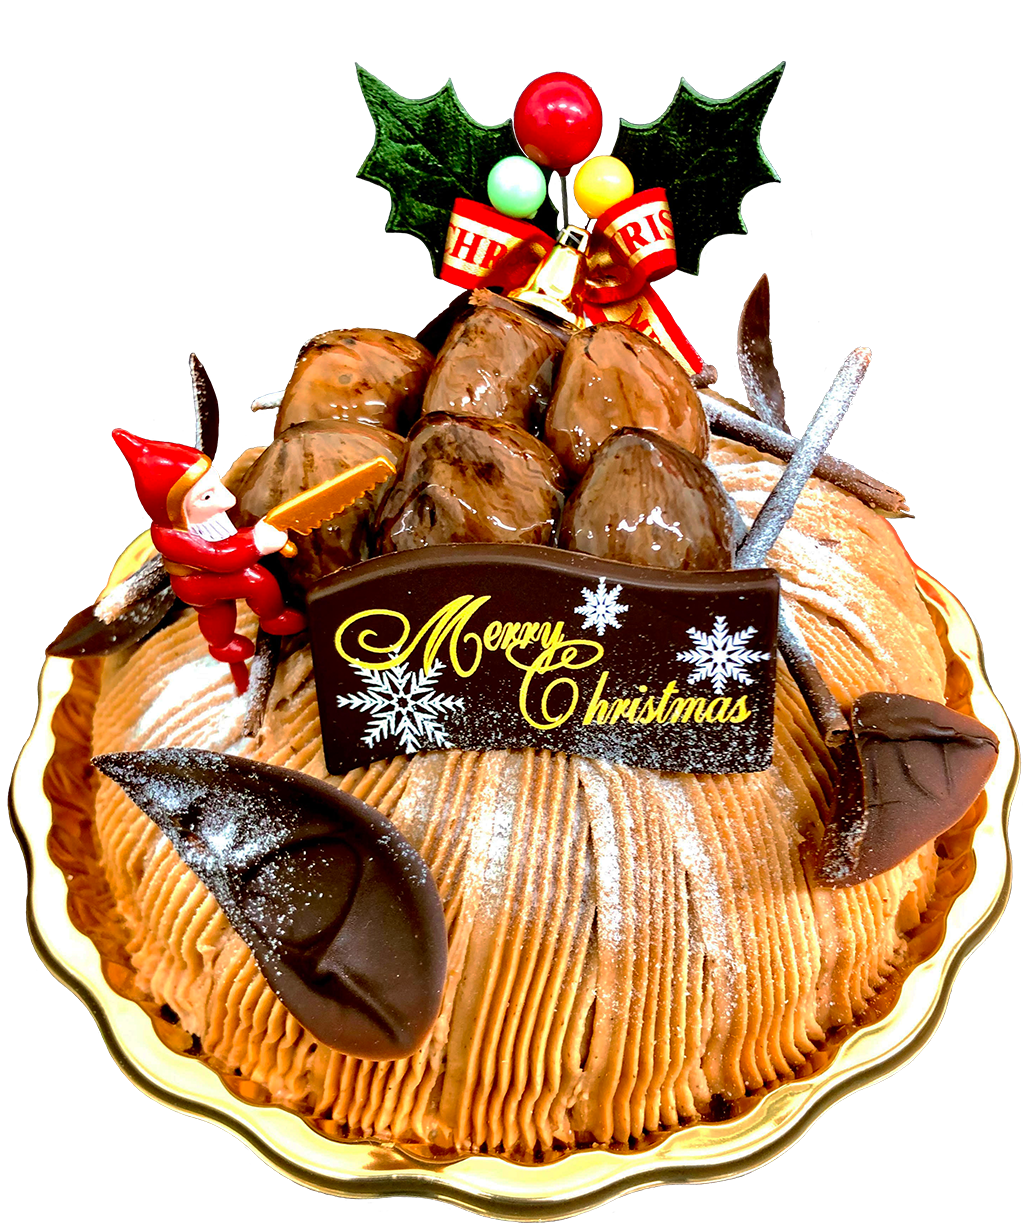 クリスマスケーキ「モンブランショコラカシス」